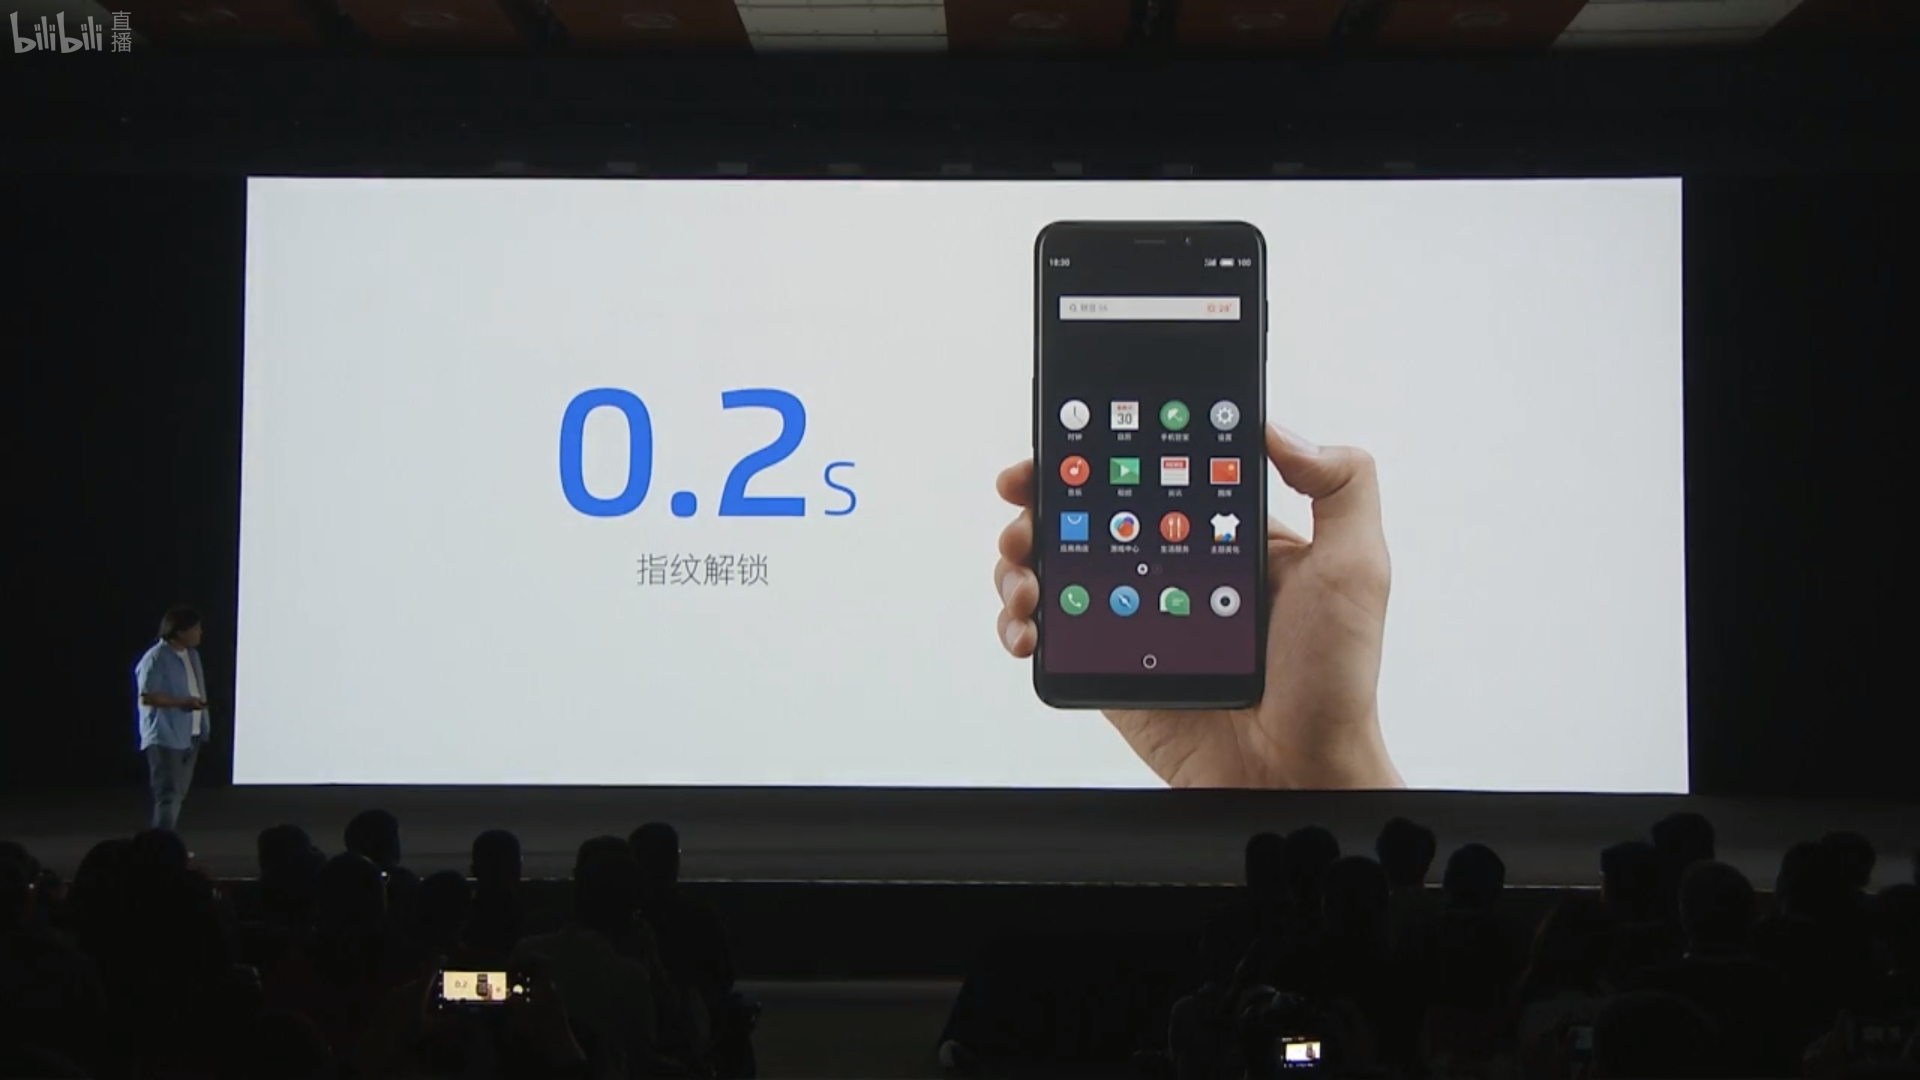 17 января компания Meizu представила в Пекине новый смартфон M6s